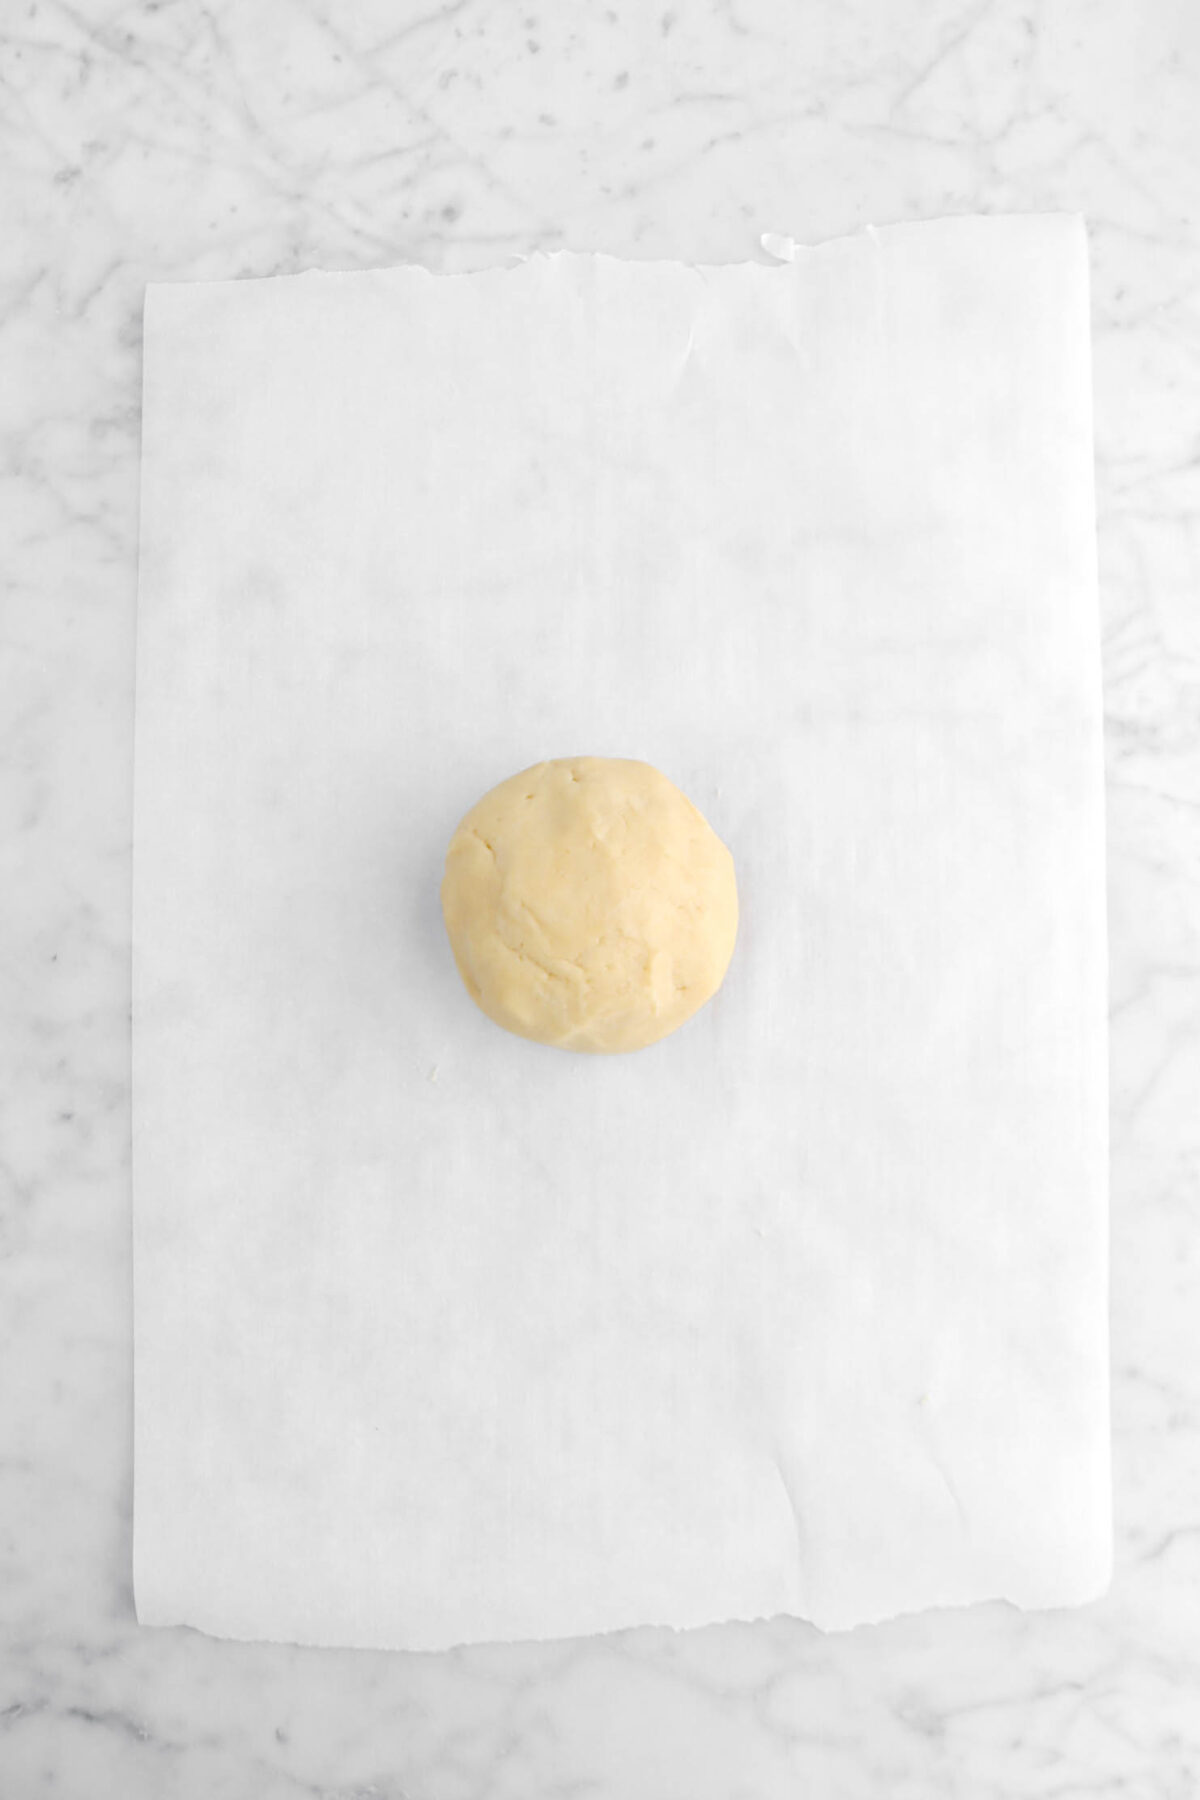 dough ball on parchment paper.